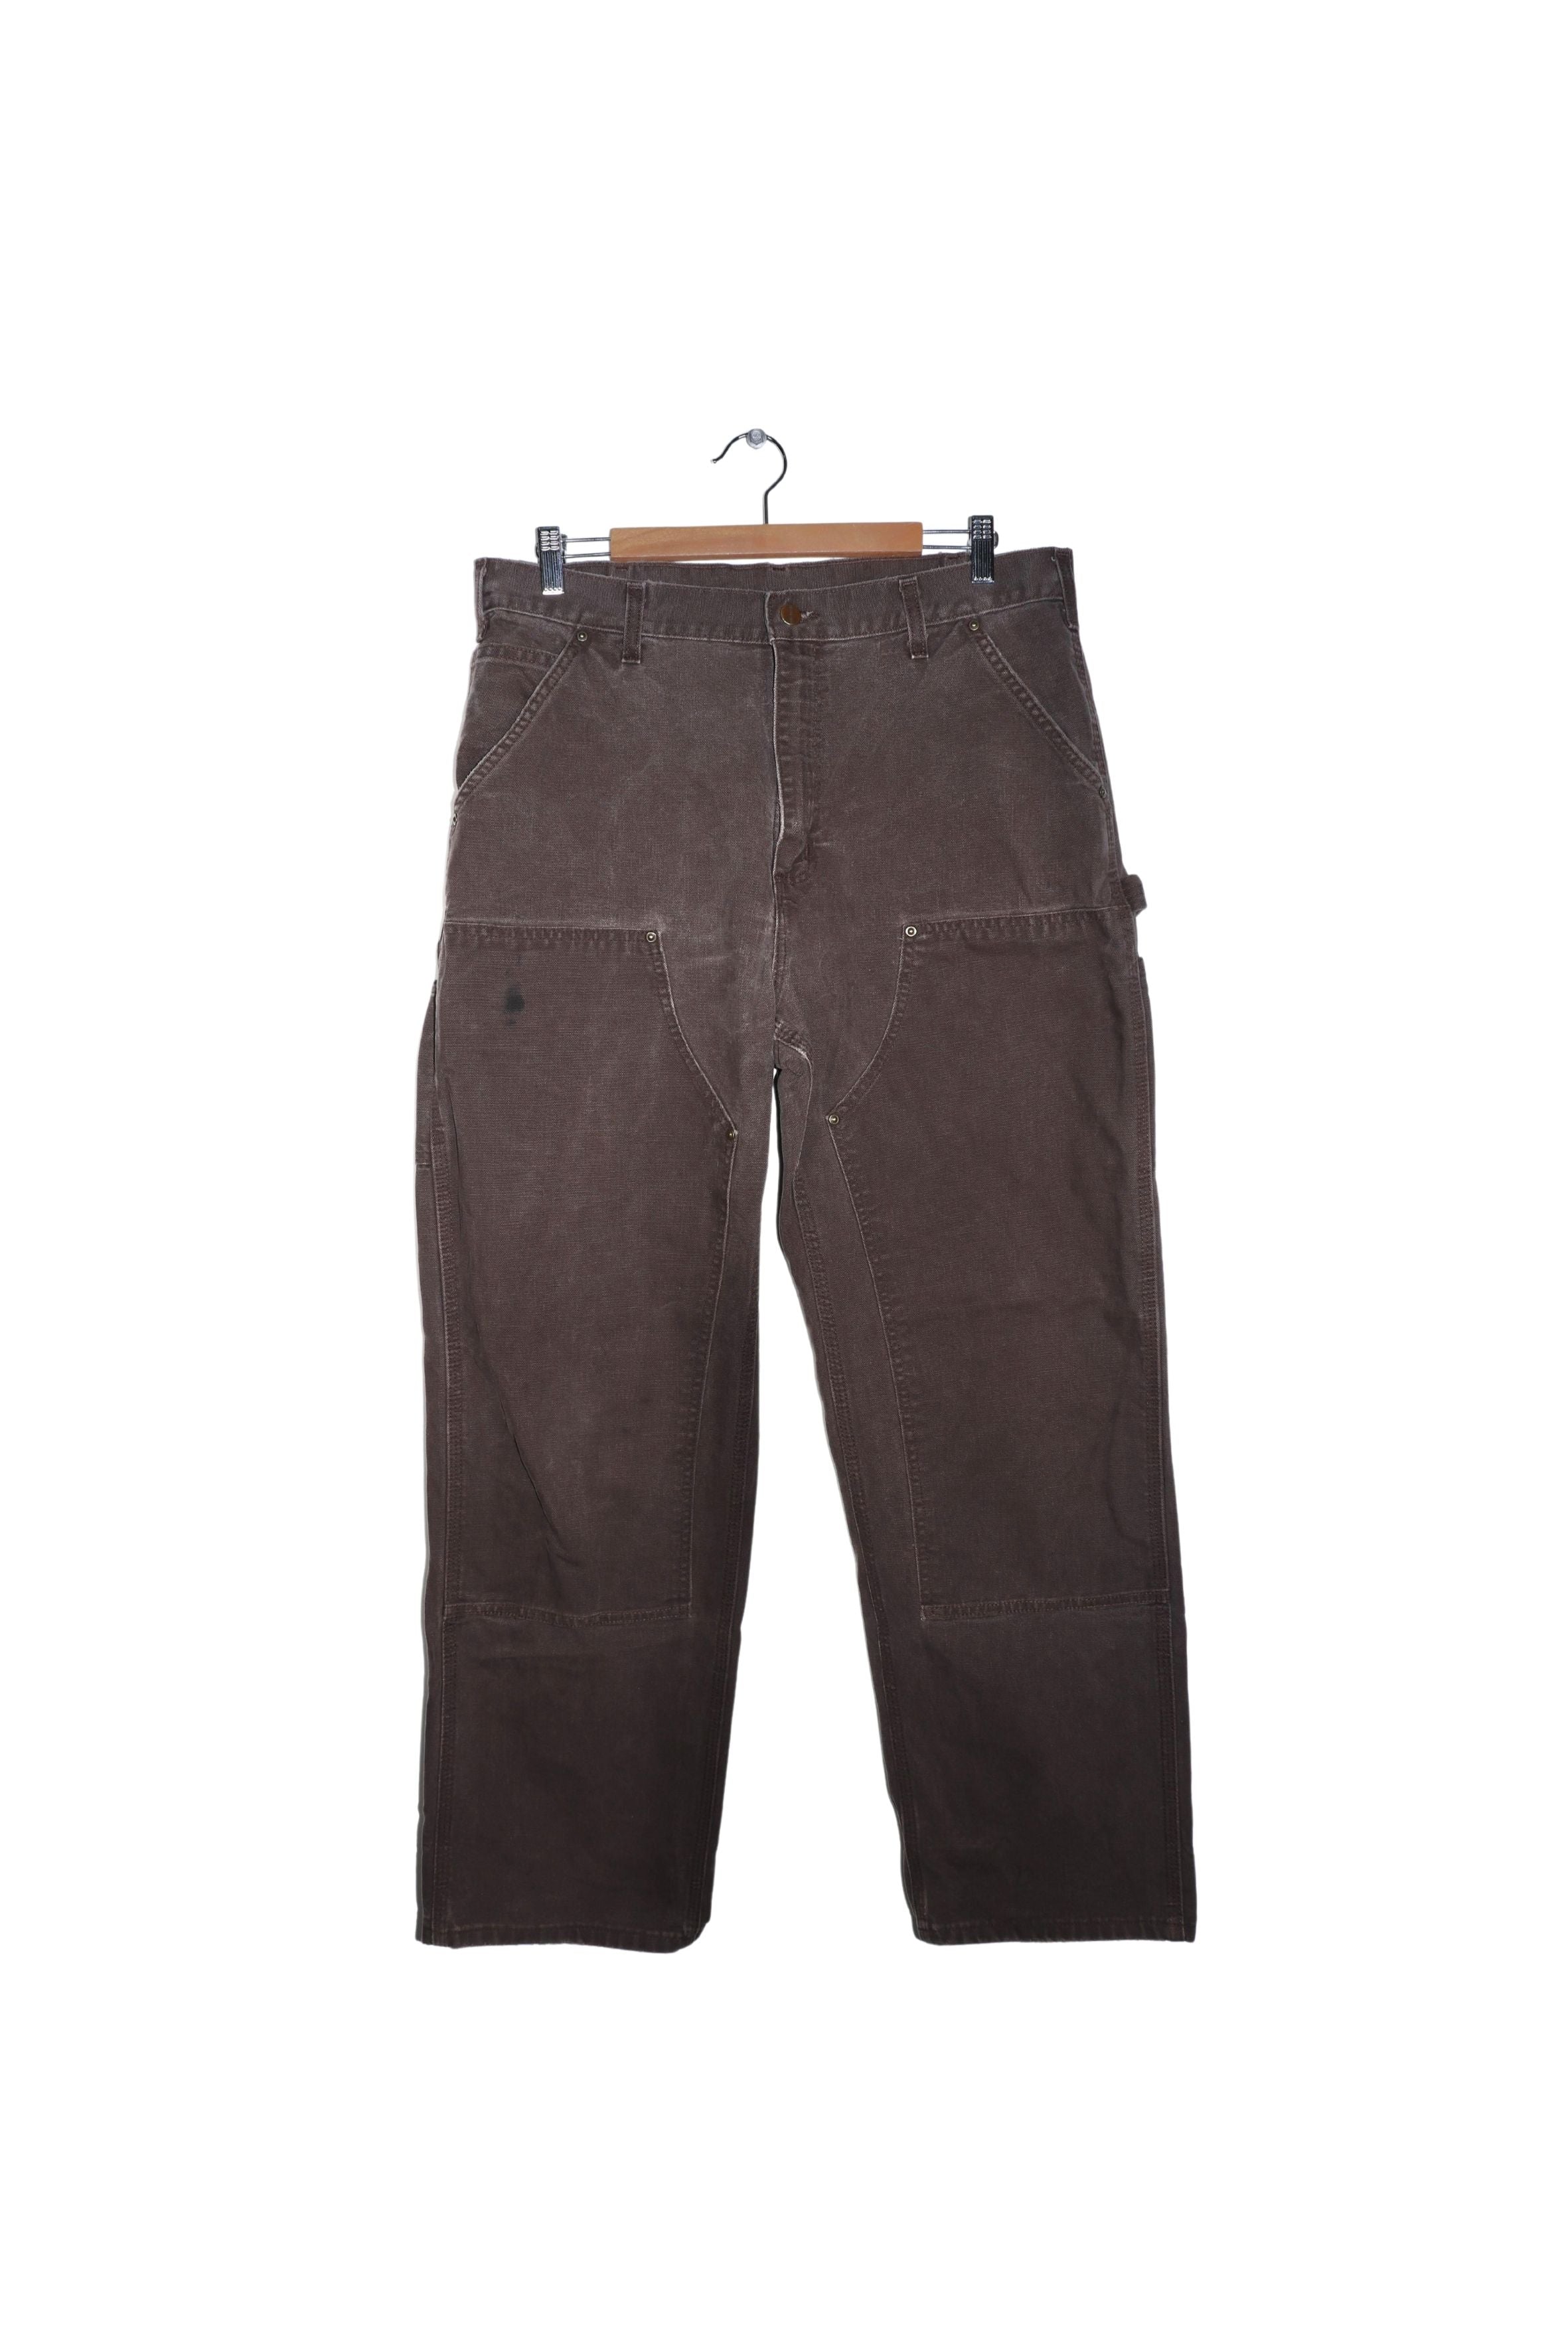 Vintage 36x32 Double-Knee Brown Carhartt Pants